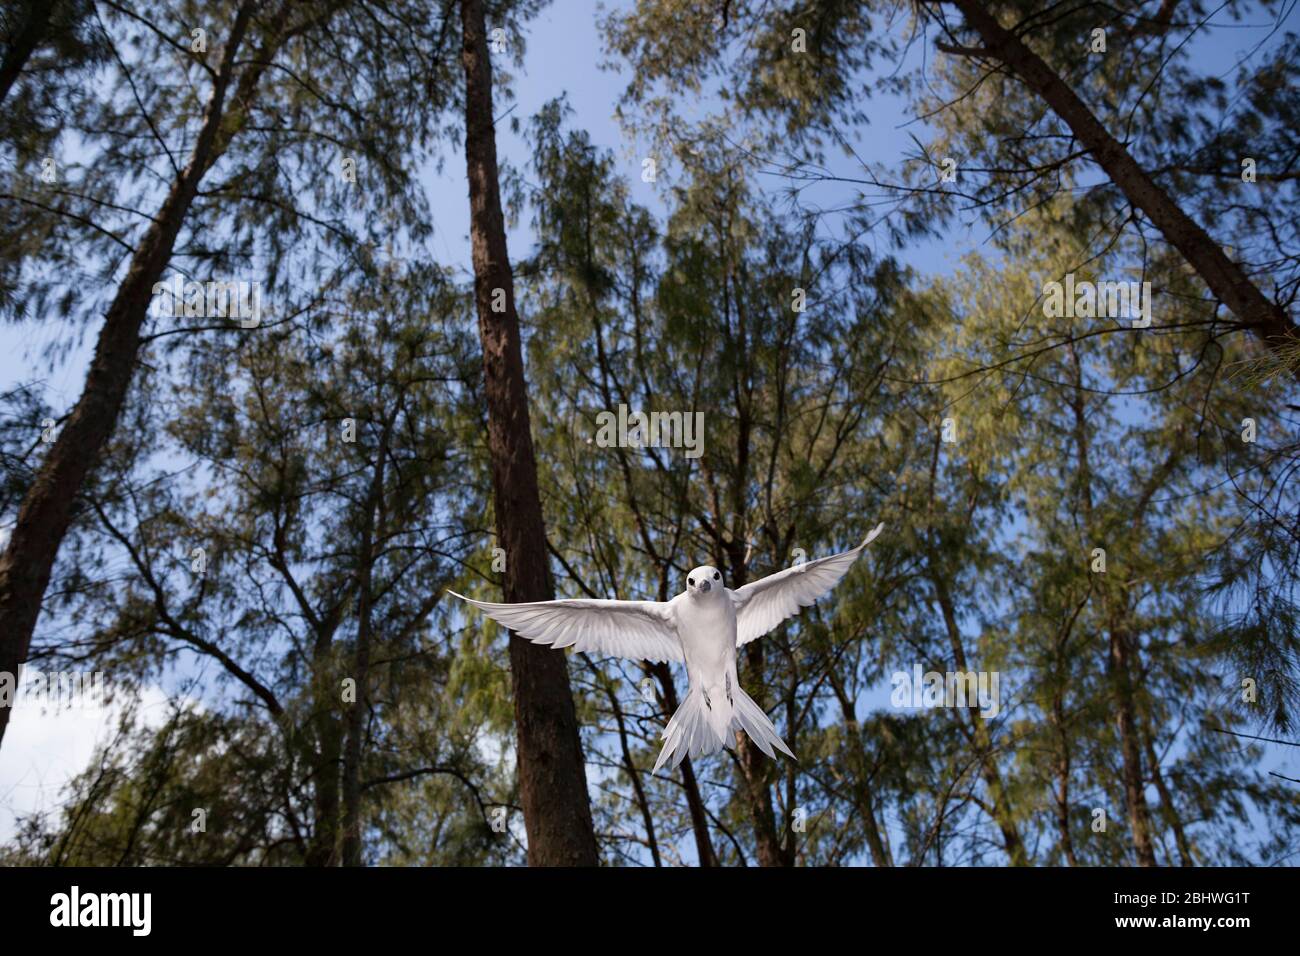 Terna bianca o fata, Gygis alba rothschildi, che si stena tra gli alberi di casuarina, il rifugio nazionale della fauna selvatica dell'Atollo di Midway, il monumento di Papahanaumokuakea Foto Stock